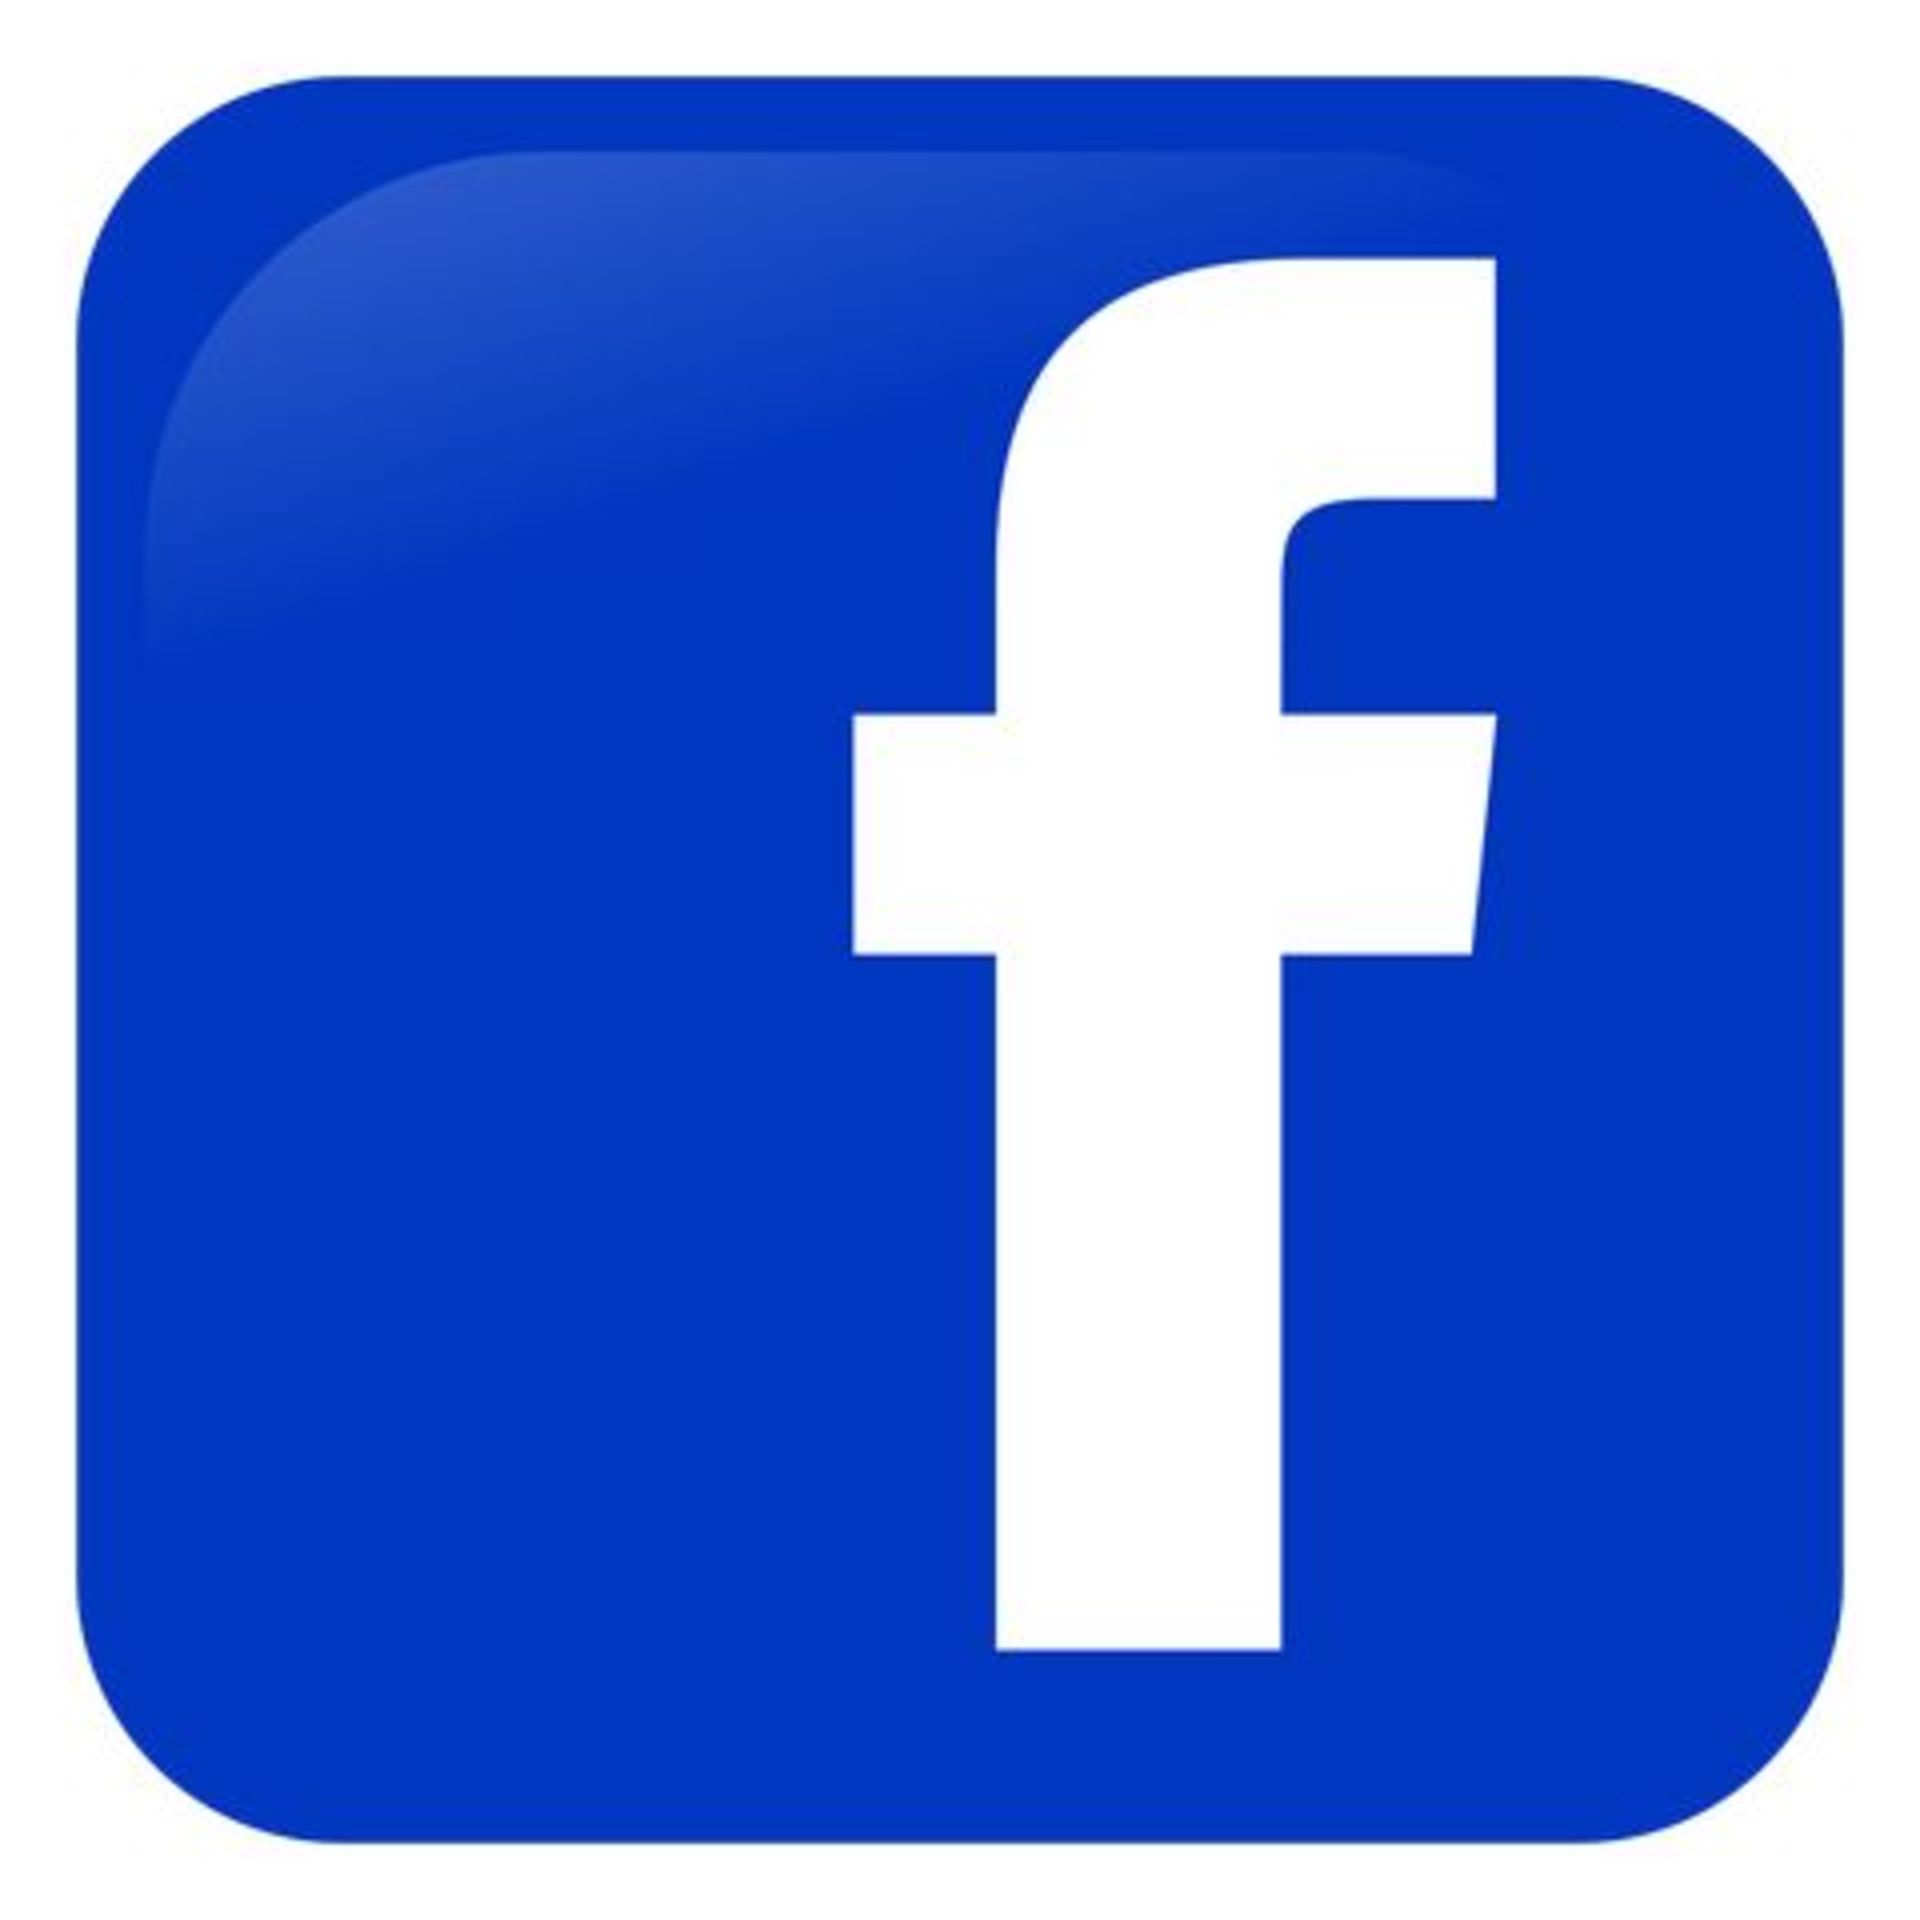 Social Media  Links
Follow Us On Facebook
Follow us on Linkedin
Follow us on Instagram